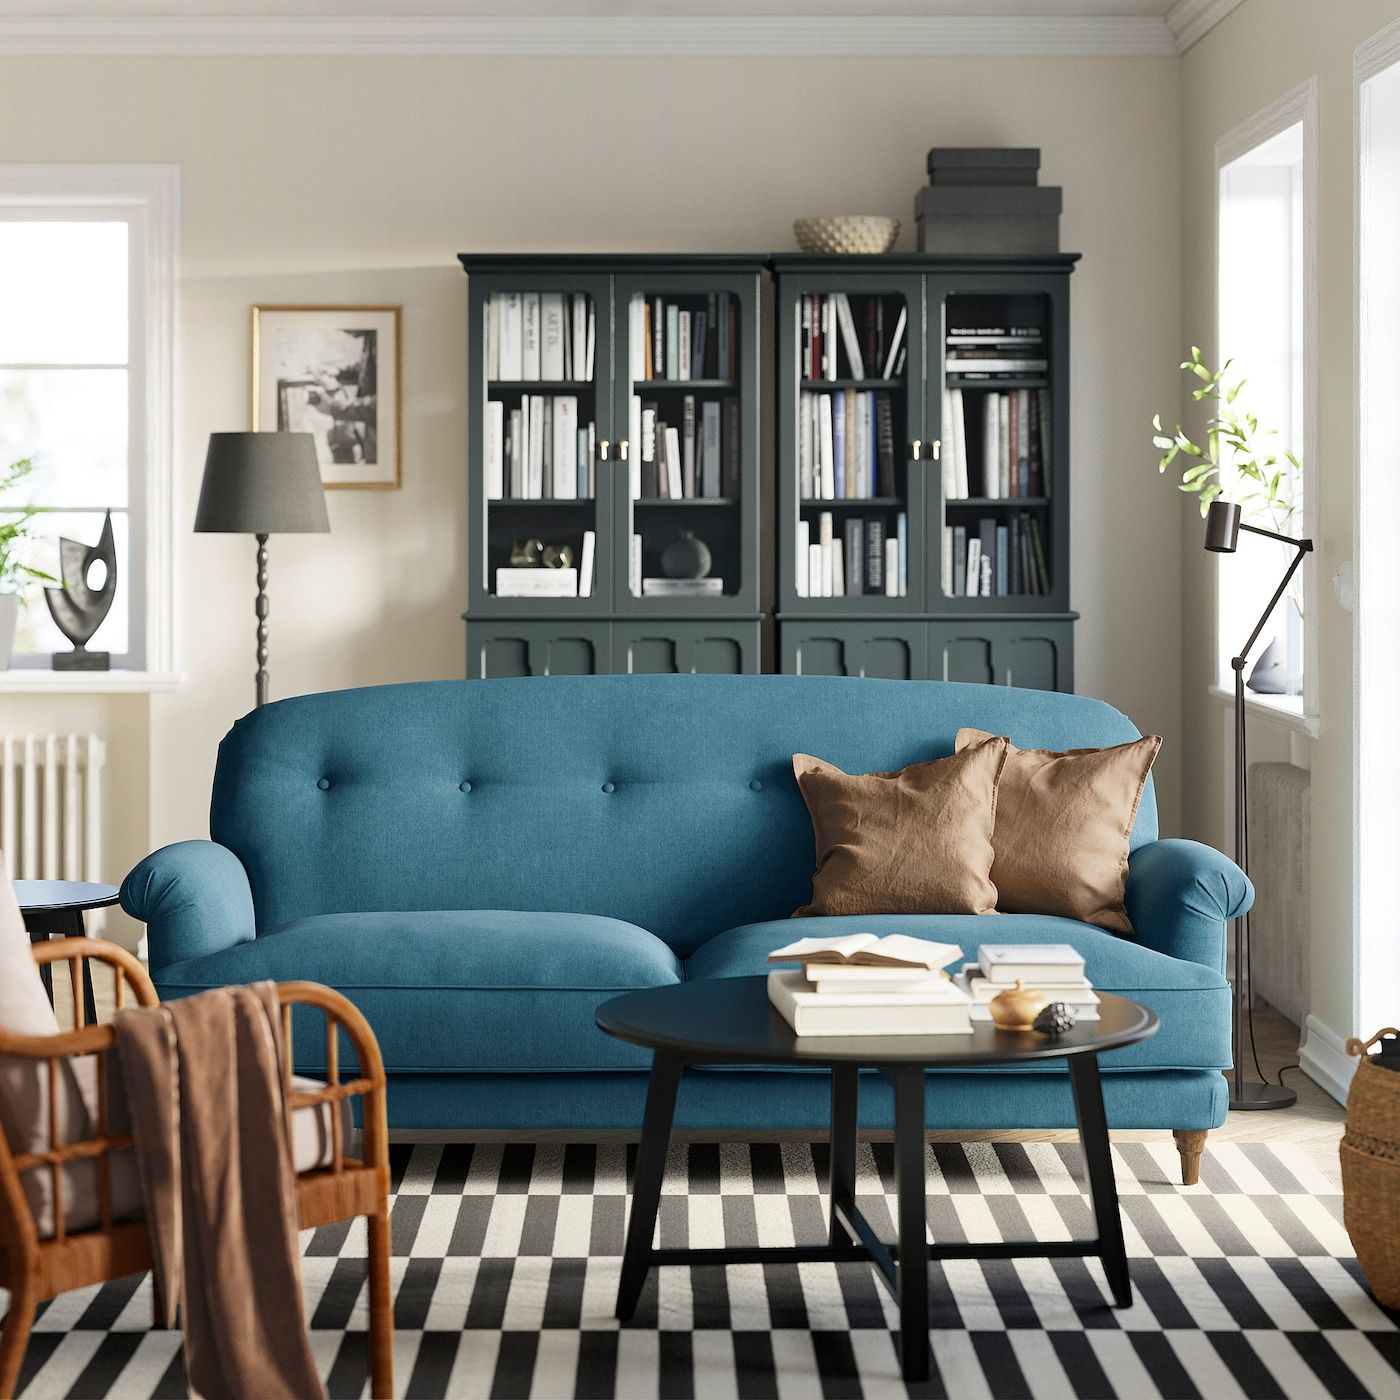 Esseboda 3 Seat Sofa, Tallmyra Blue – Ikea For Sofas In Blue (Photo 7 of 15)